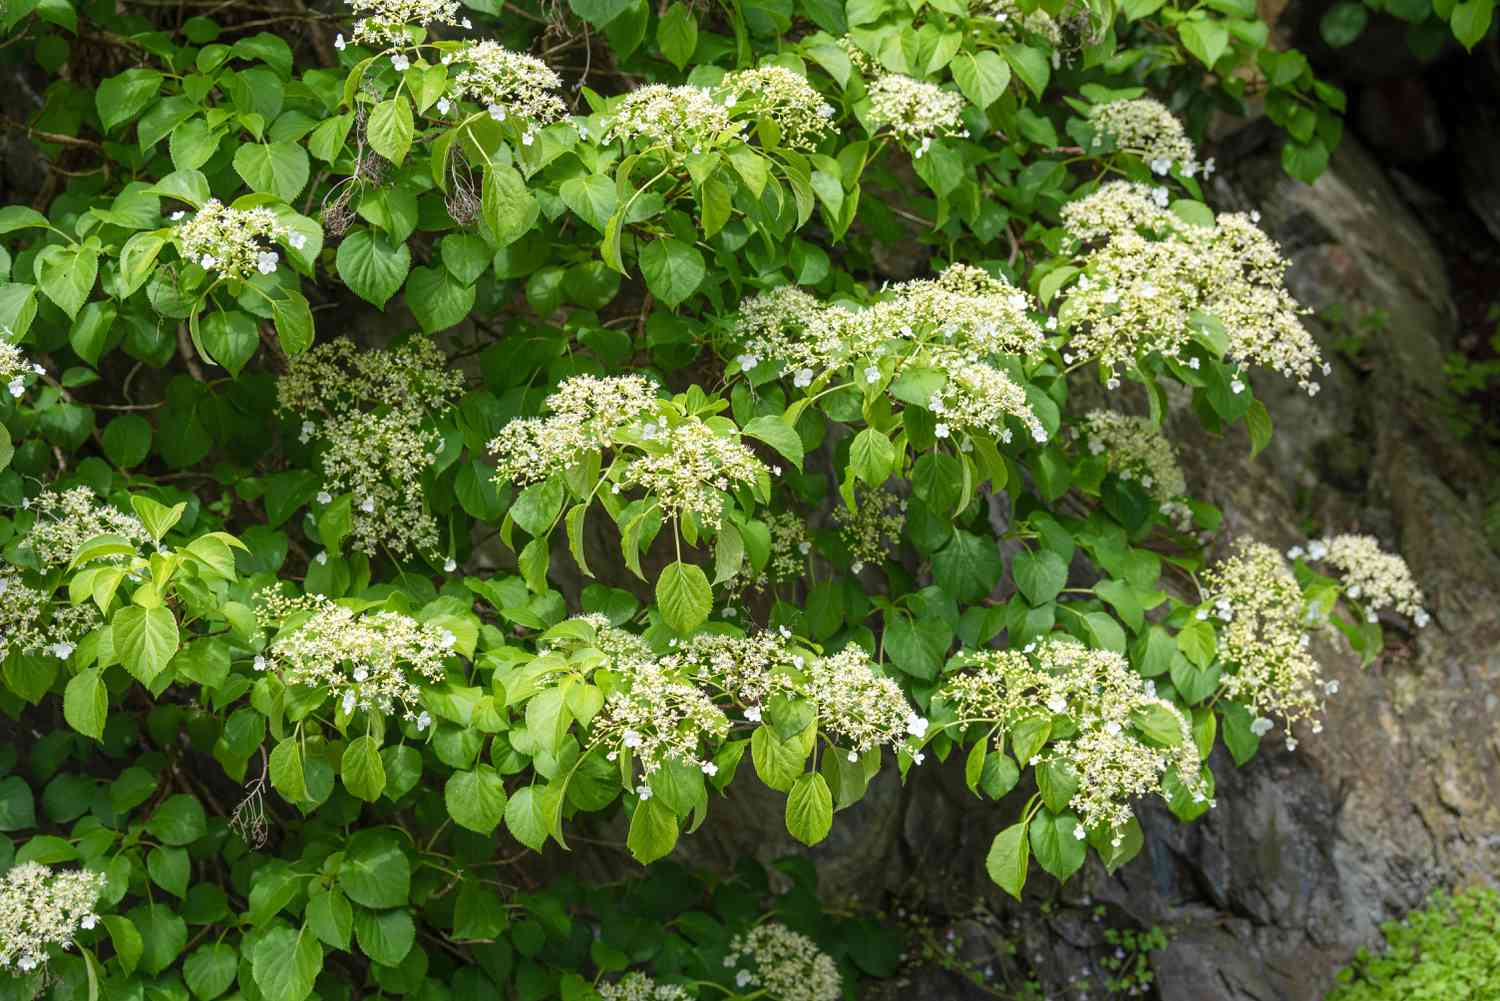 Planta de hortensia trepadora con pequeños racimos de flores blanco-verdosas colgando de las ramas